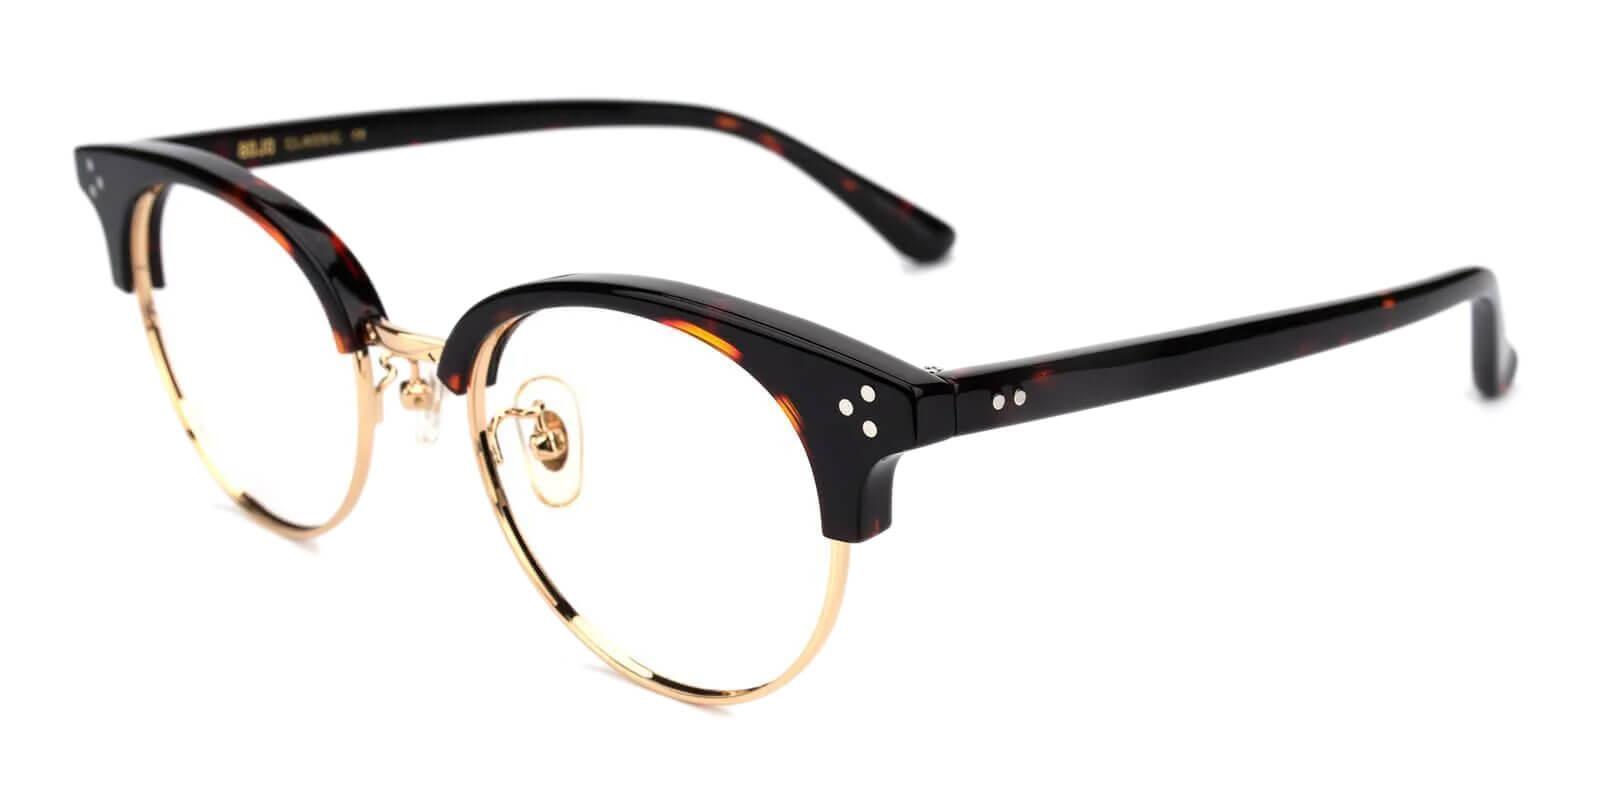 Emerge Tortoise Acetate Eyeglasses , NosePads Frames from ABBE Glasses